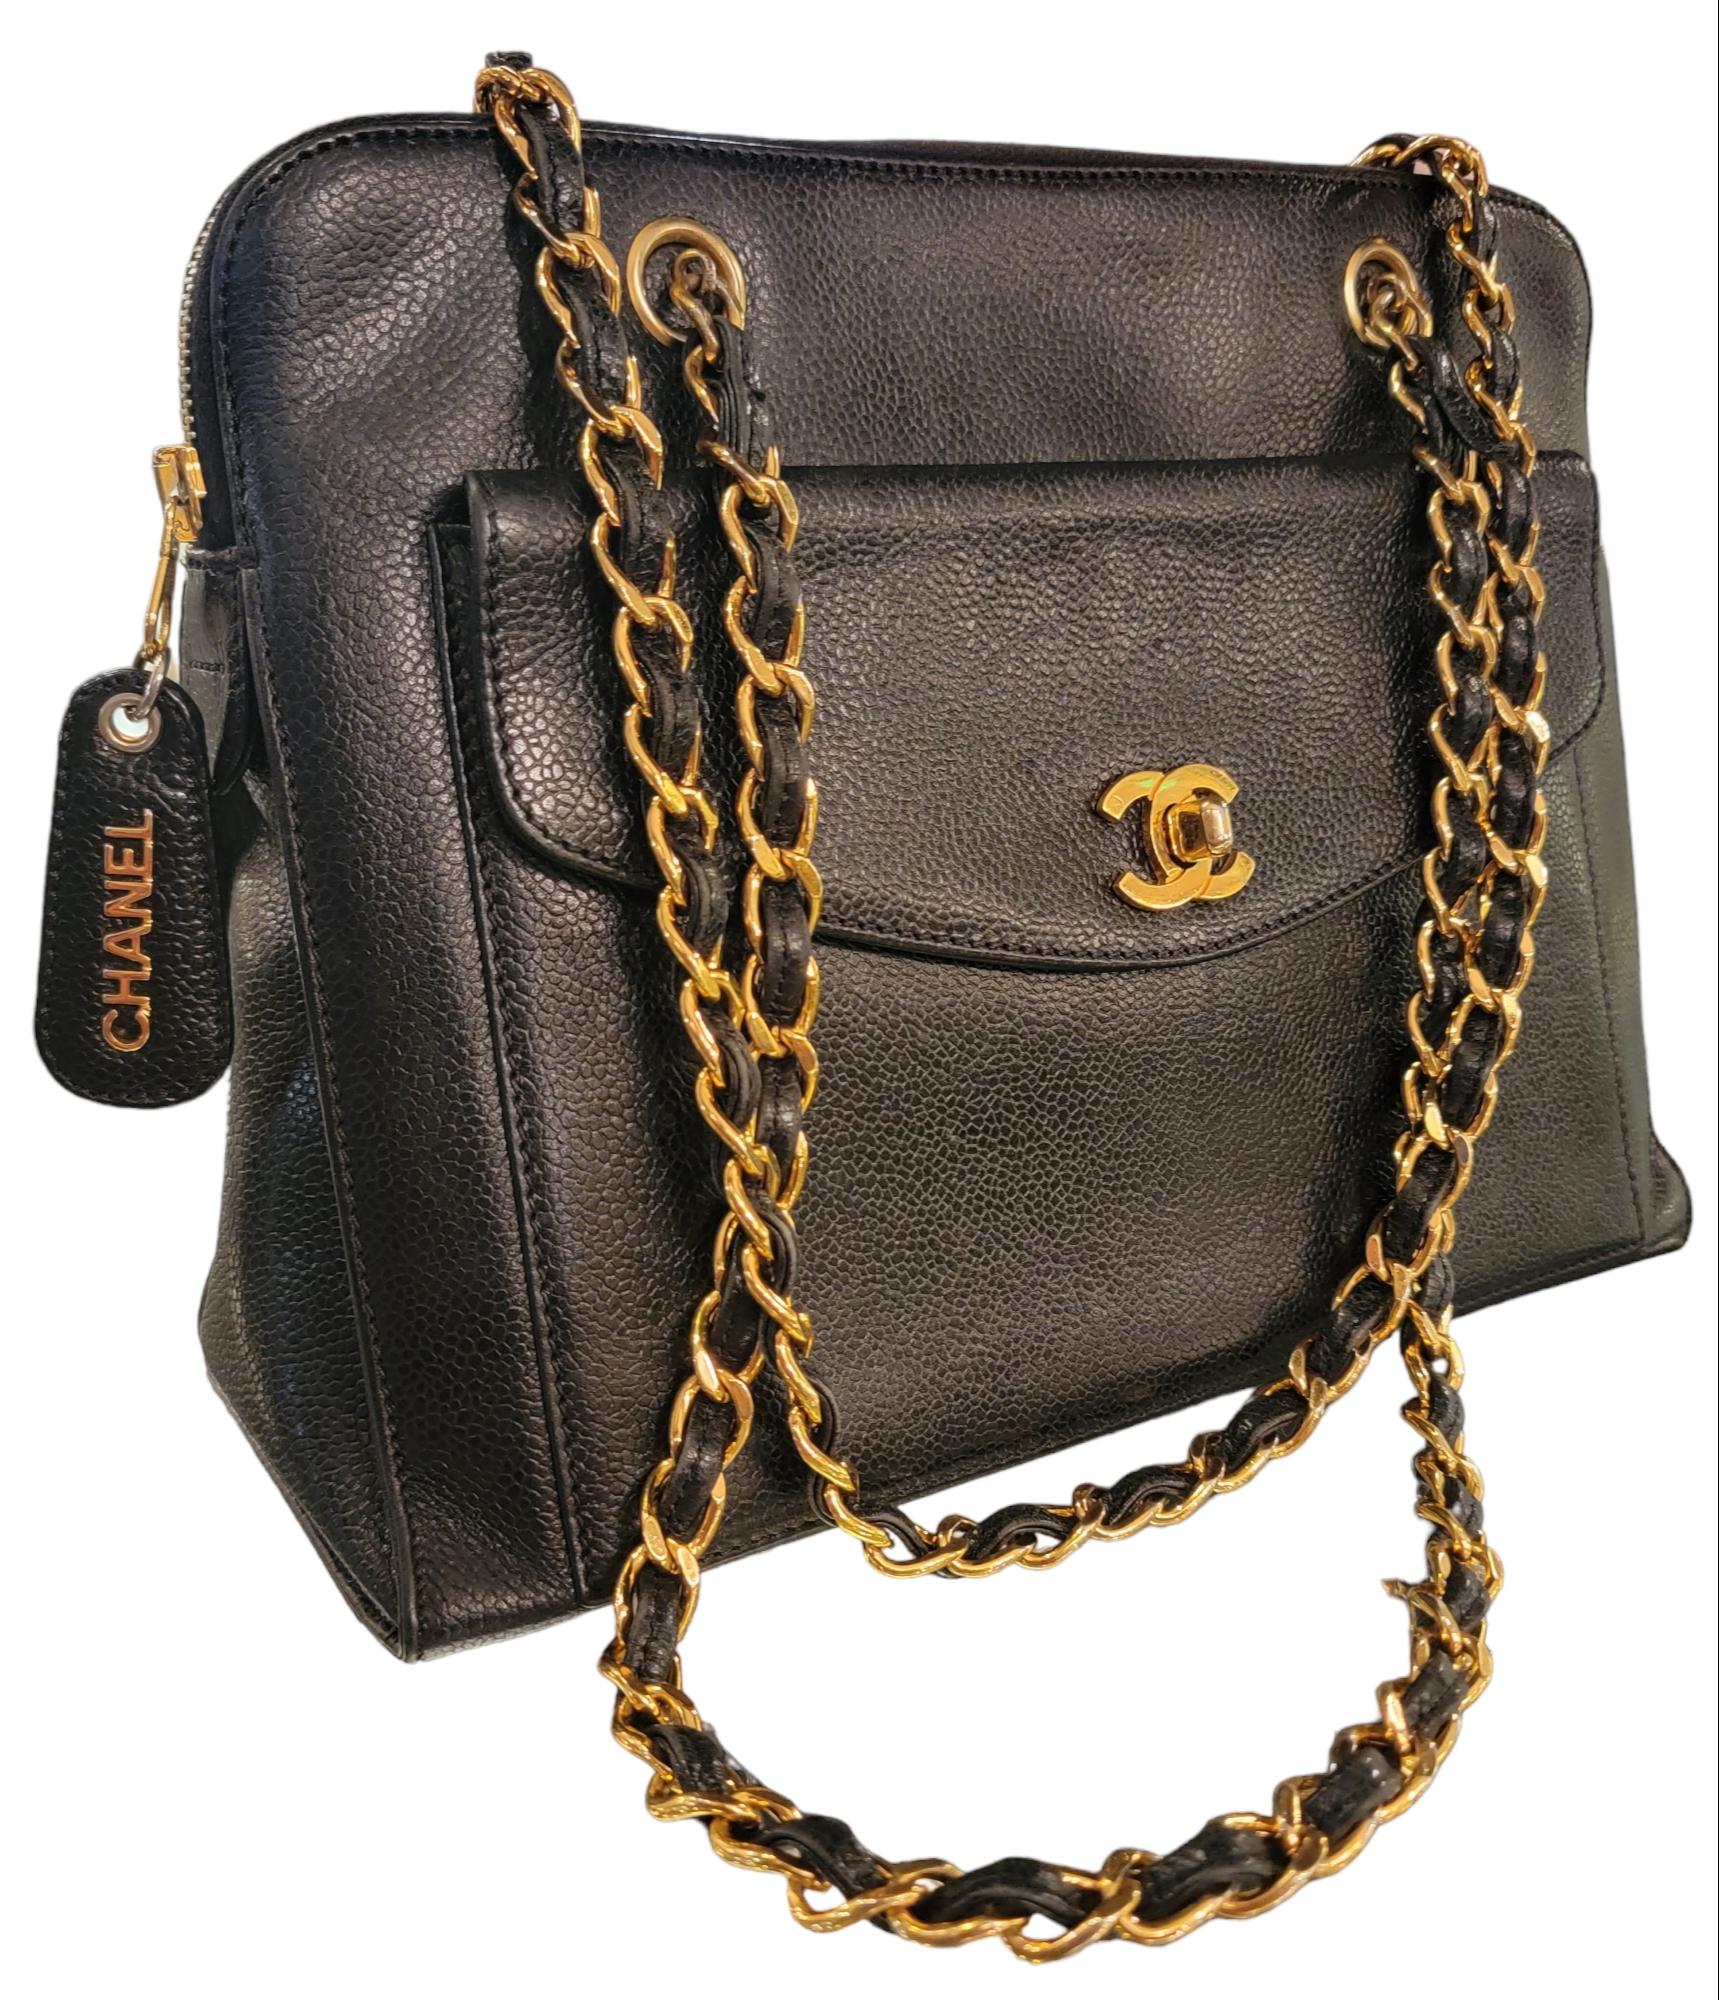 CHANEL Black Vintage Caviar Skin Leather Shoulder Bag For Sale 1